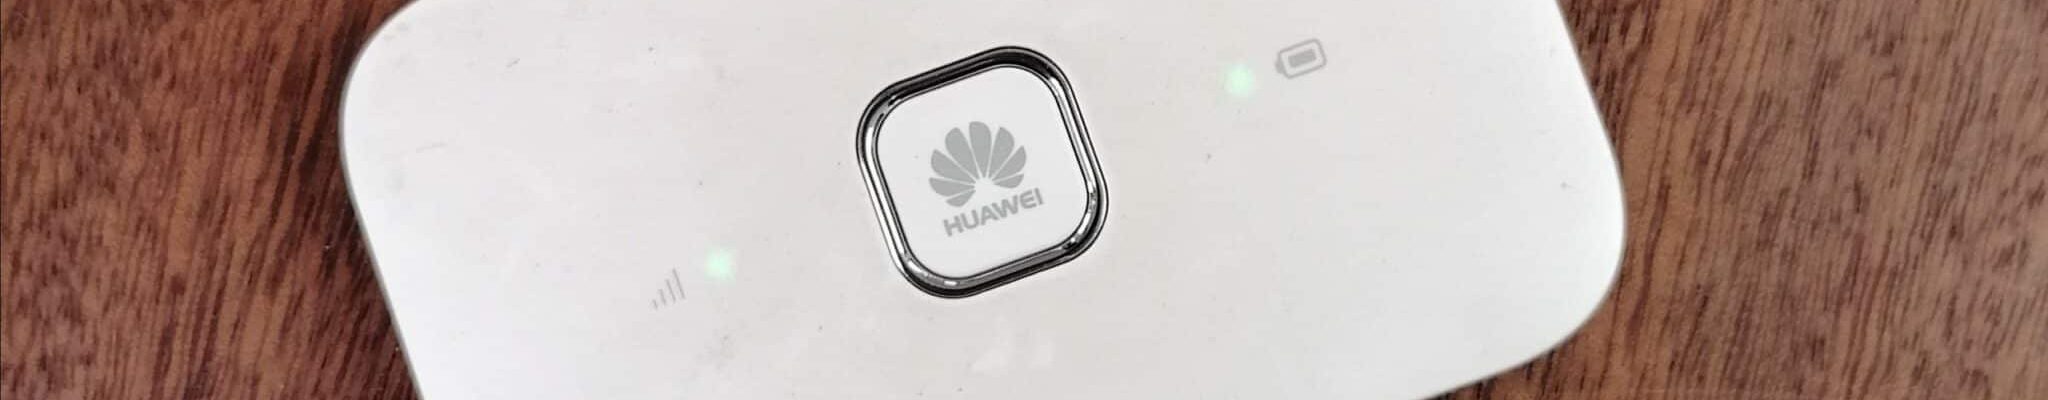 WLAN-Router von Huawei